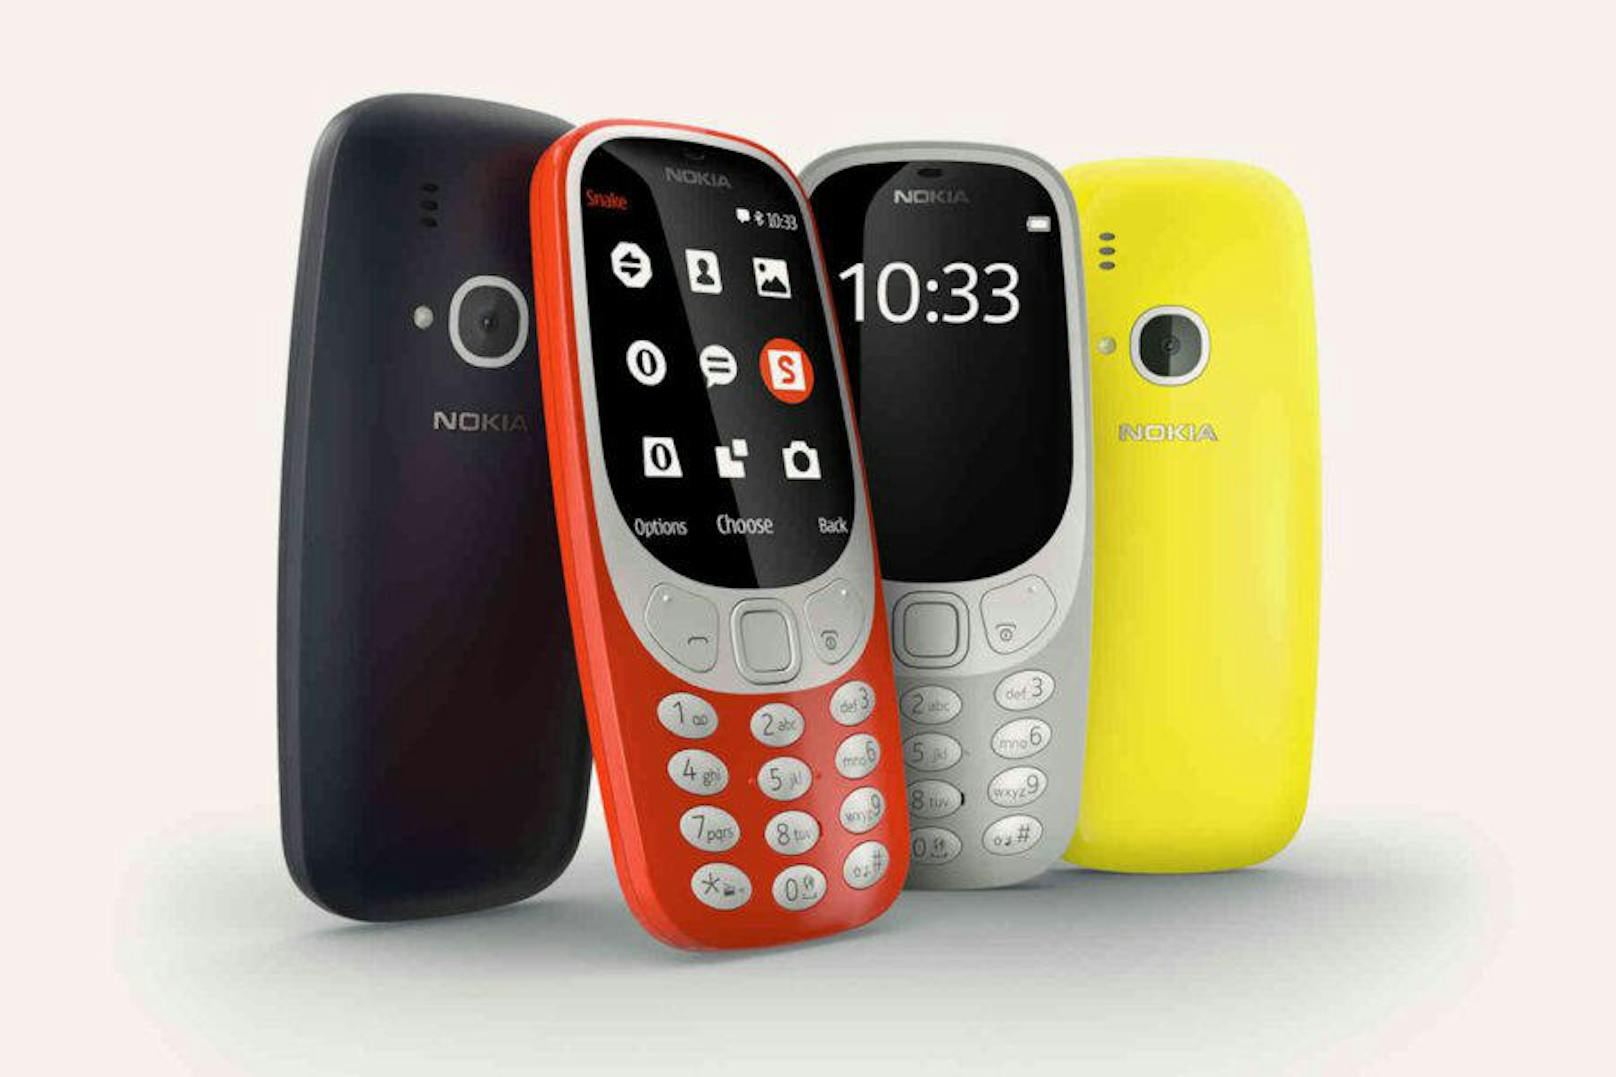 <b>Nokia 3310:</b> Im Gegensatz zum Original aus dem Jahr 2000 ist die neue Version mit Farbdisplay und Kamera ausgerüstet. Der Akku soll bis zu einem Monat Strom liefern. Auch eine neue Version des Mobile-Games "Snake" ist vorinstalliert. <a href="https://www.heute.at/digital/multimedia/story/Nokia-3310--Comeback-in--sterreich-gestartet-49432224">"Heute" titelte: Nokia 3310: Comeback in Österreich gestartet</a>